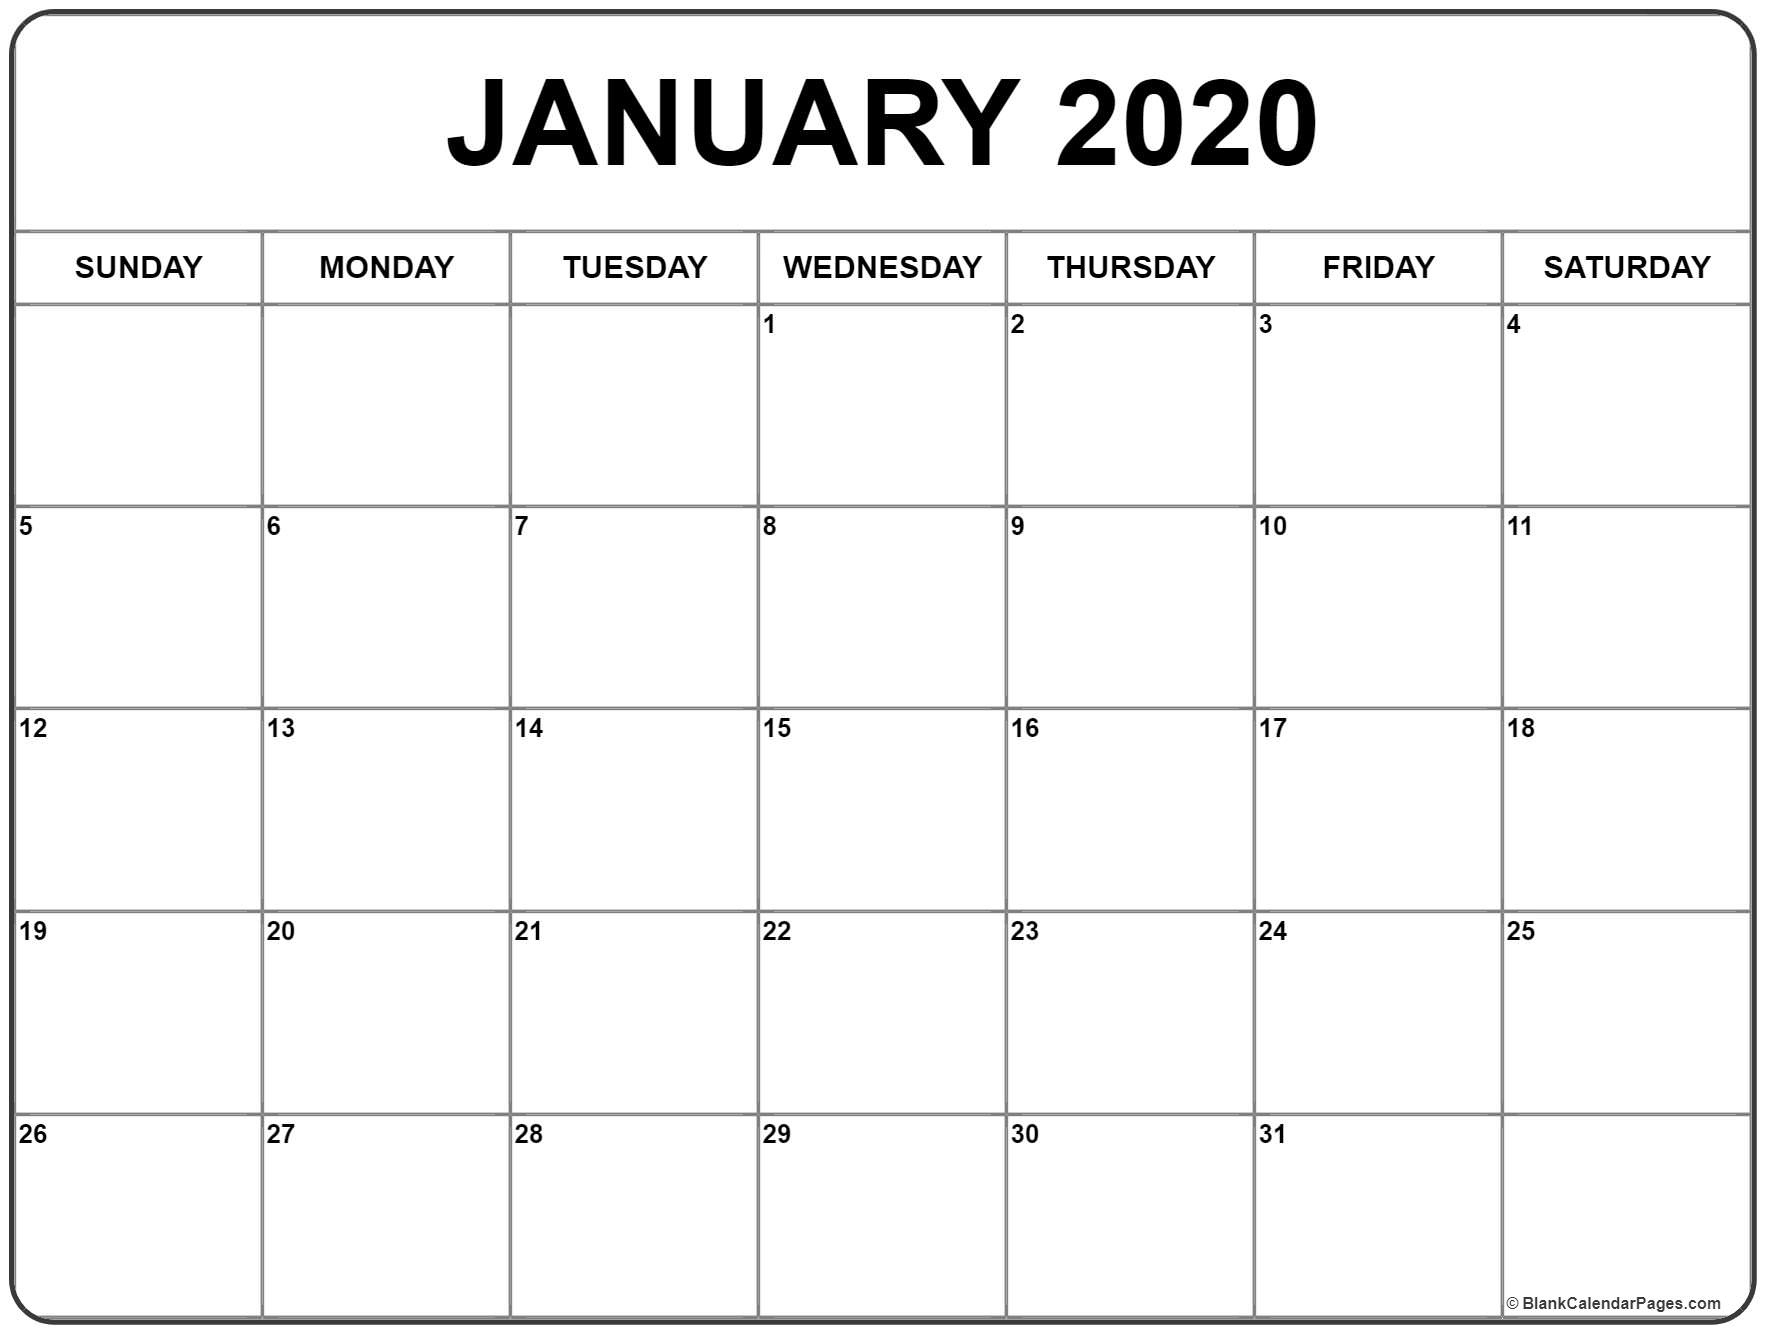 January Calendar Archives » Creative Calendar Ideas